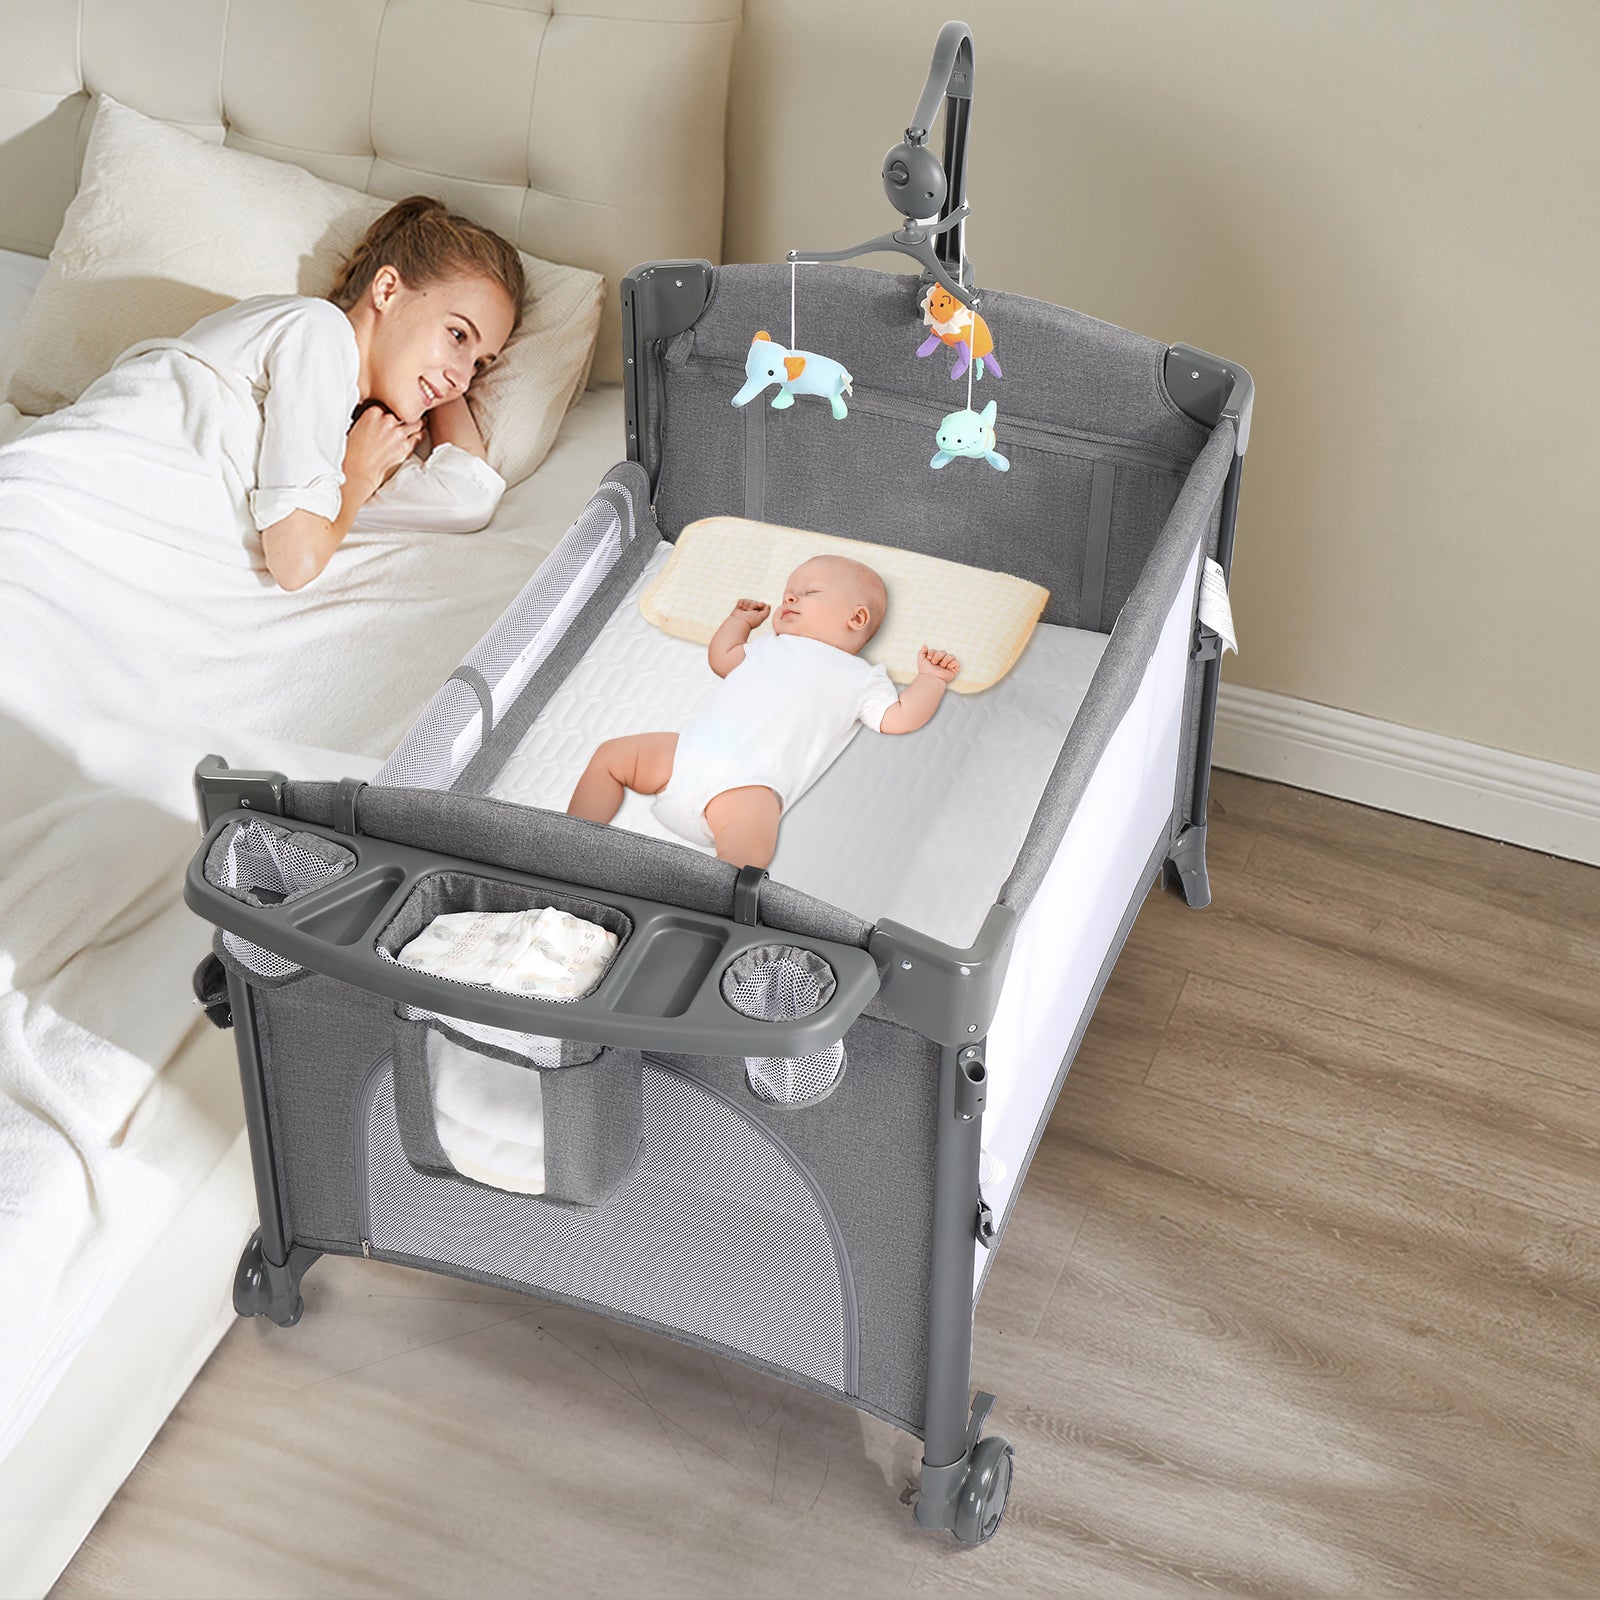 JOYMOR 3 in 1 Baby Bedside Sleeper with Bassinet Portable Folding